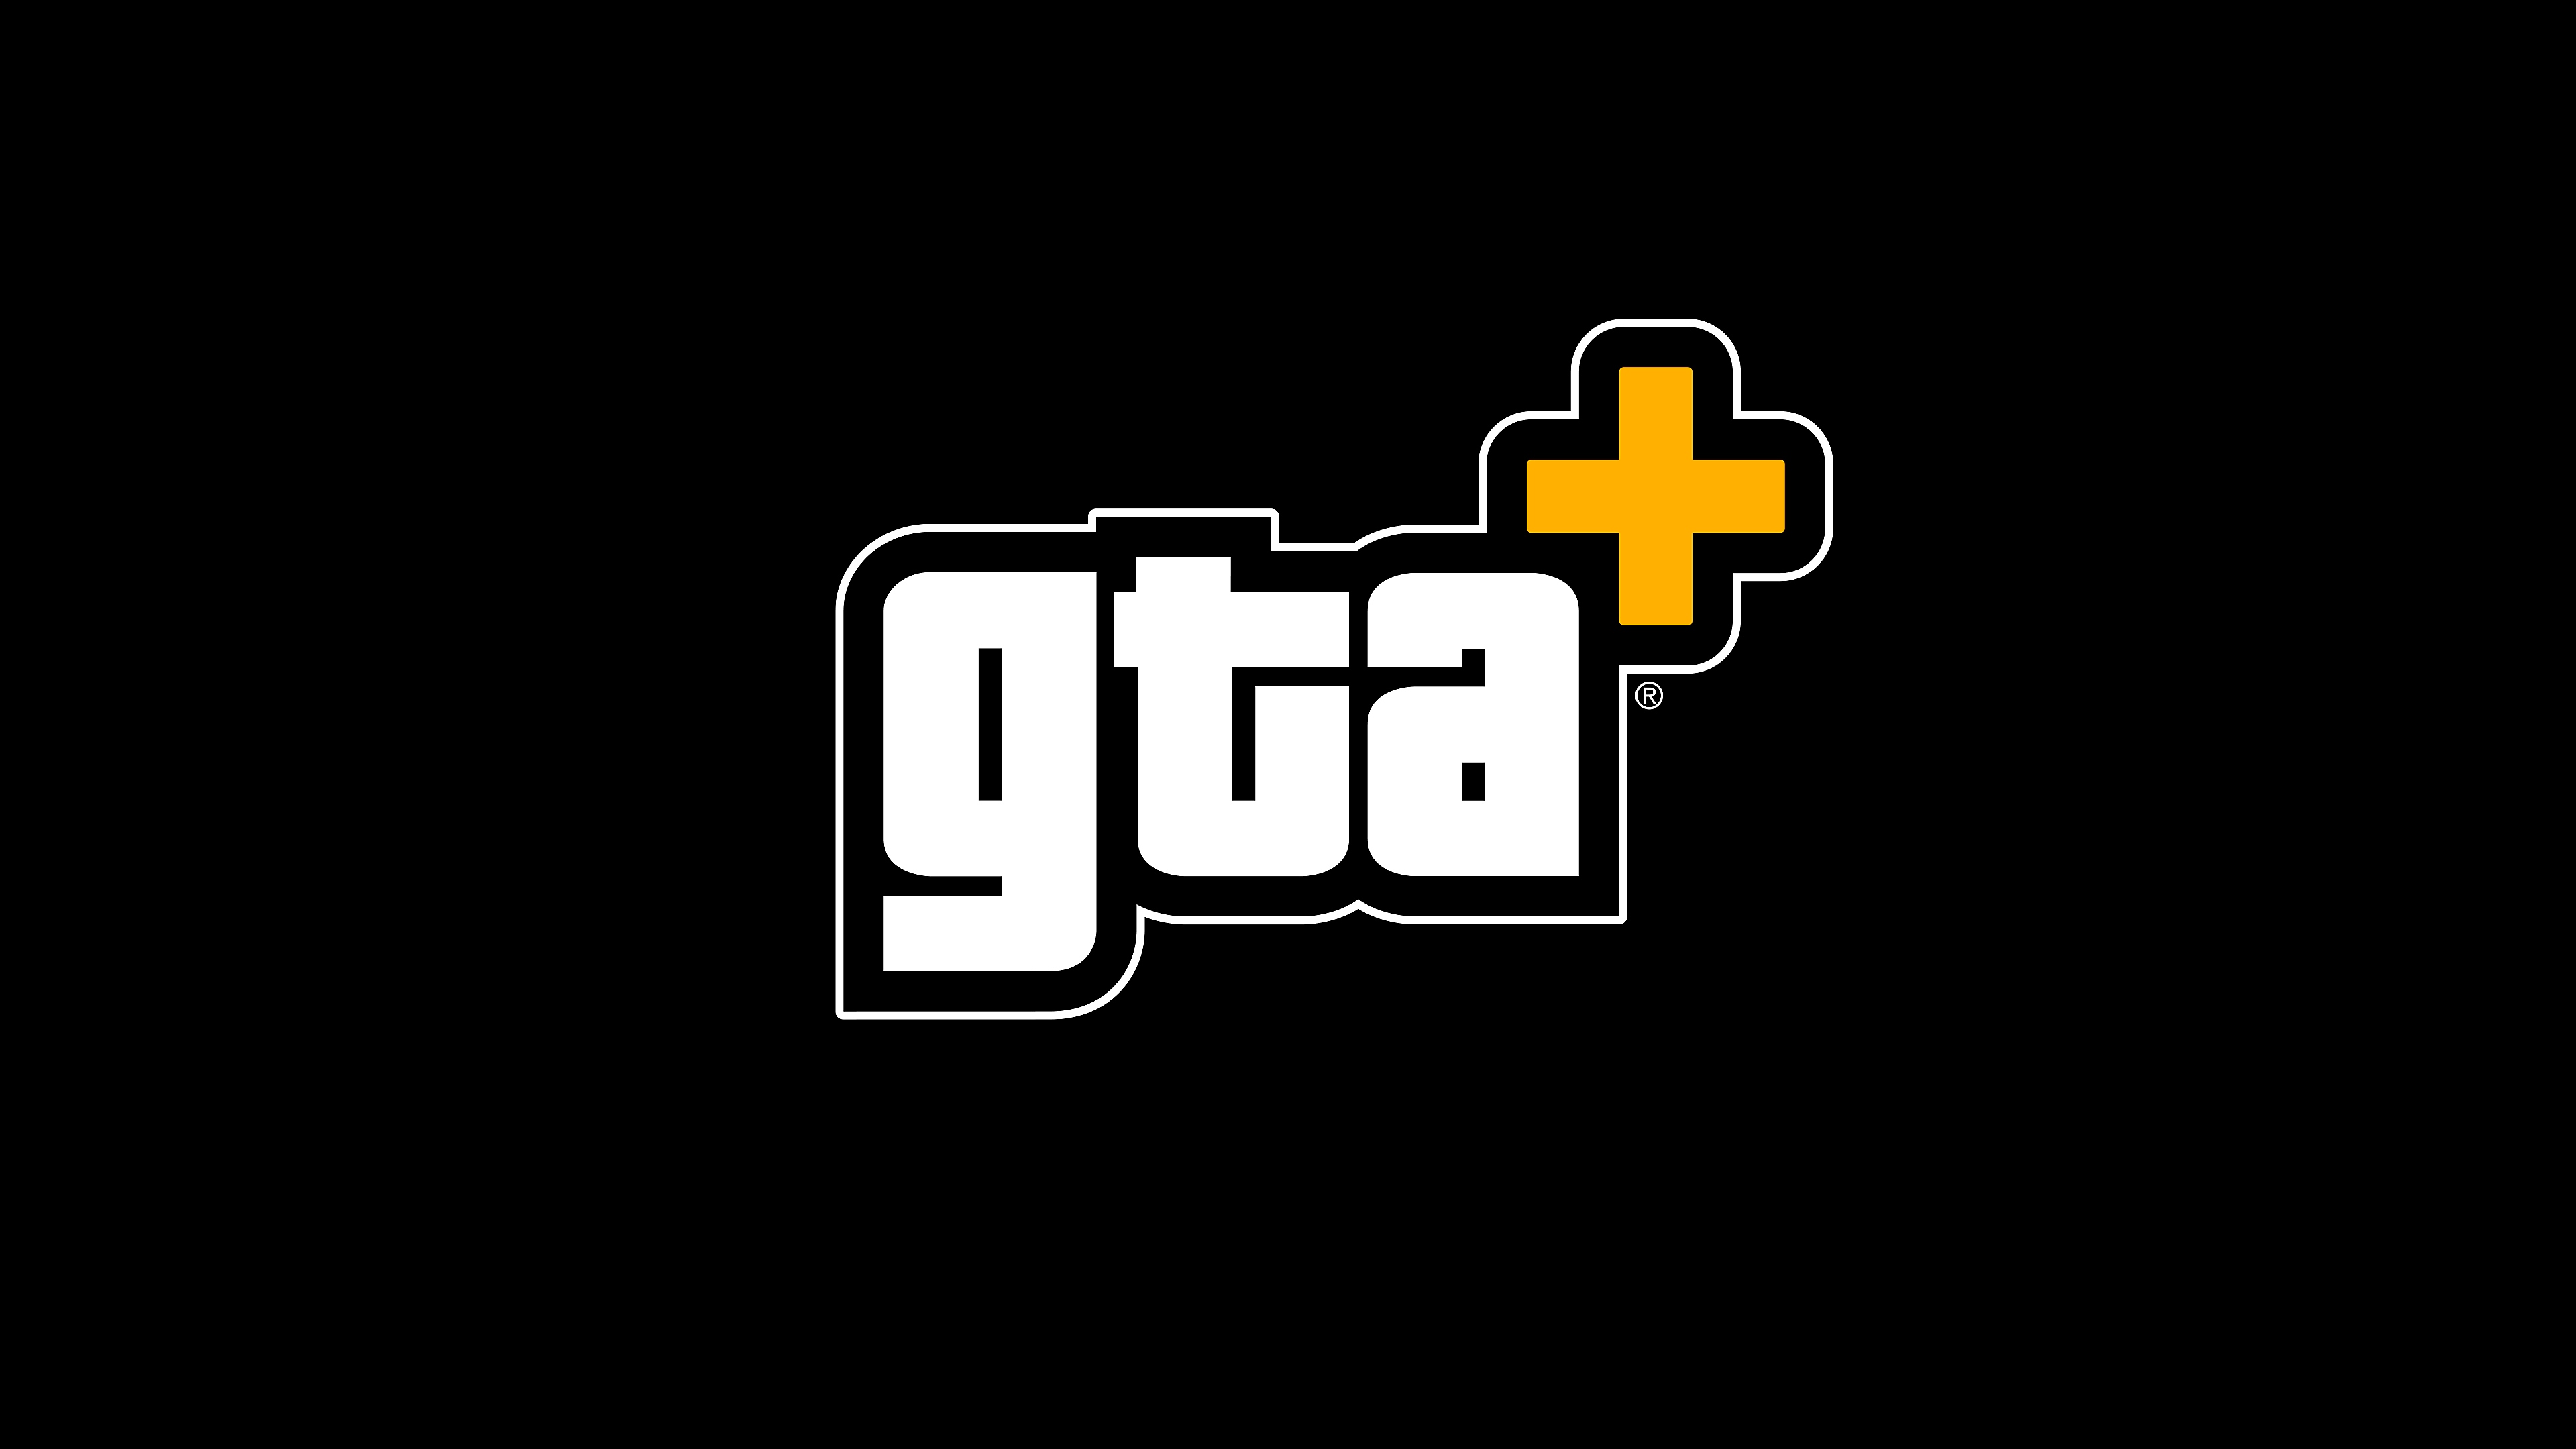 Abonnemang för GTA+ – utvald illustration med logotypen